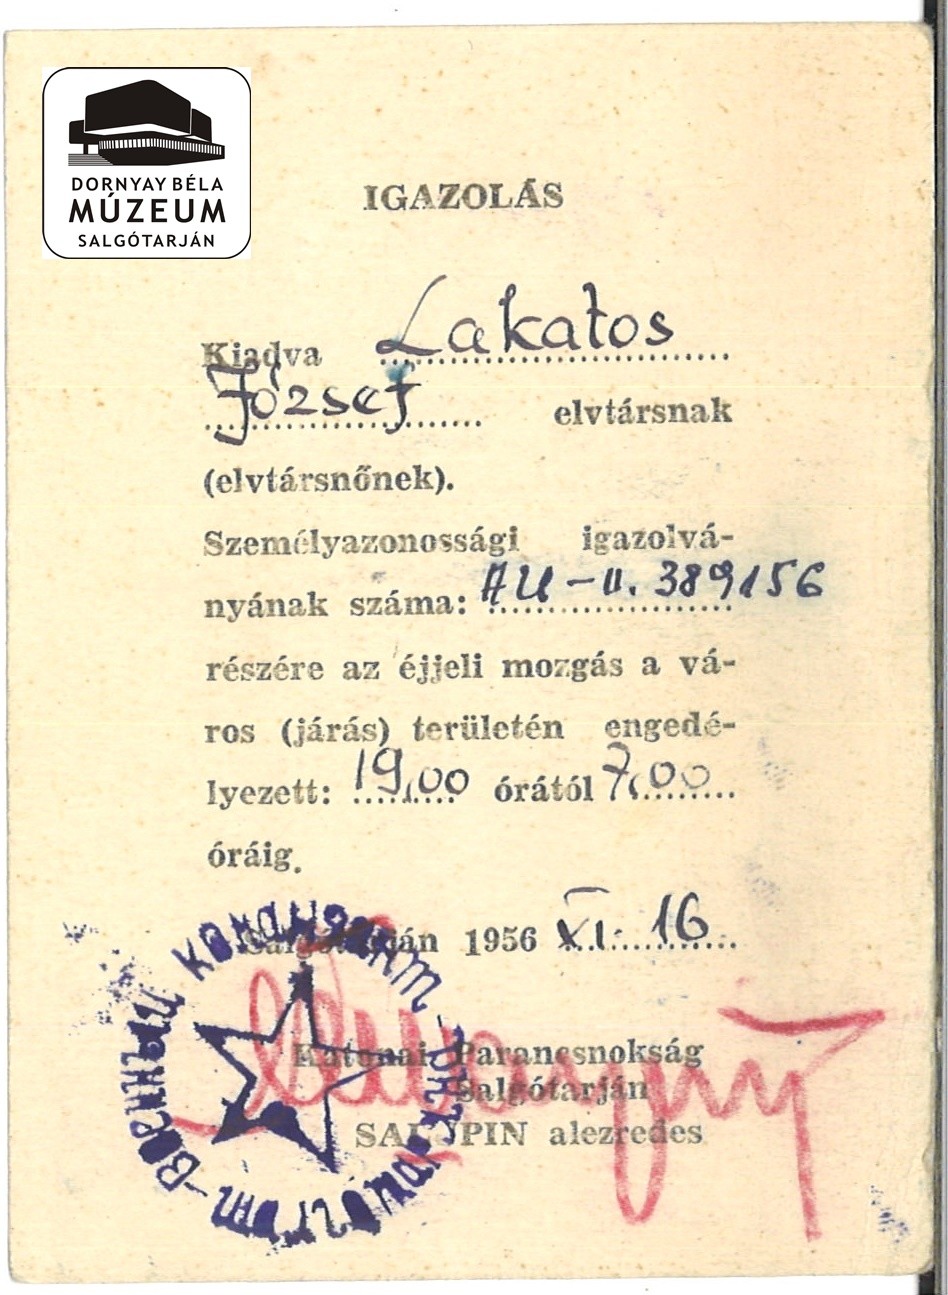 Lakatos József kijárási engedélye (Dornyay Béla Múzeum, Salgótarján CC BY-NC-SA)